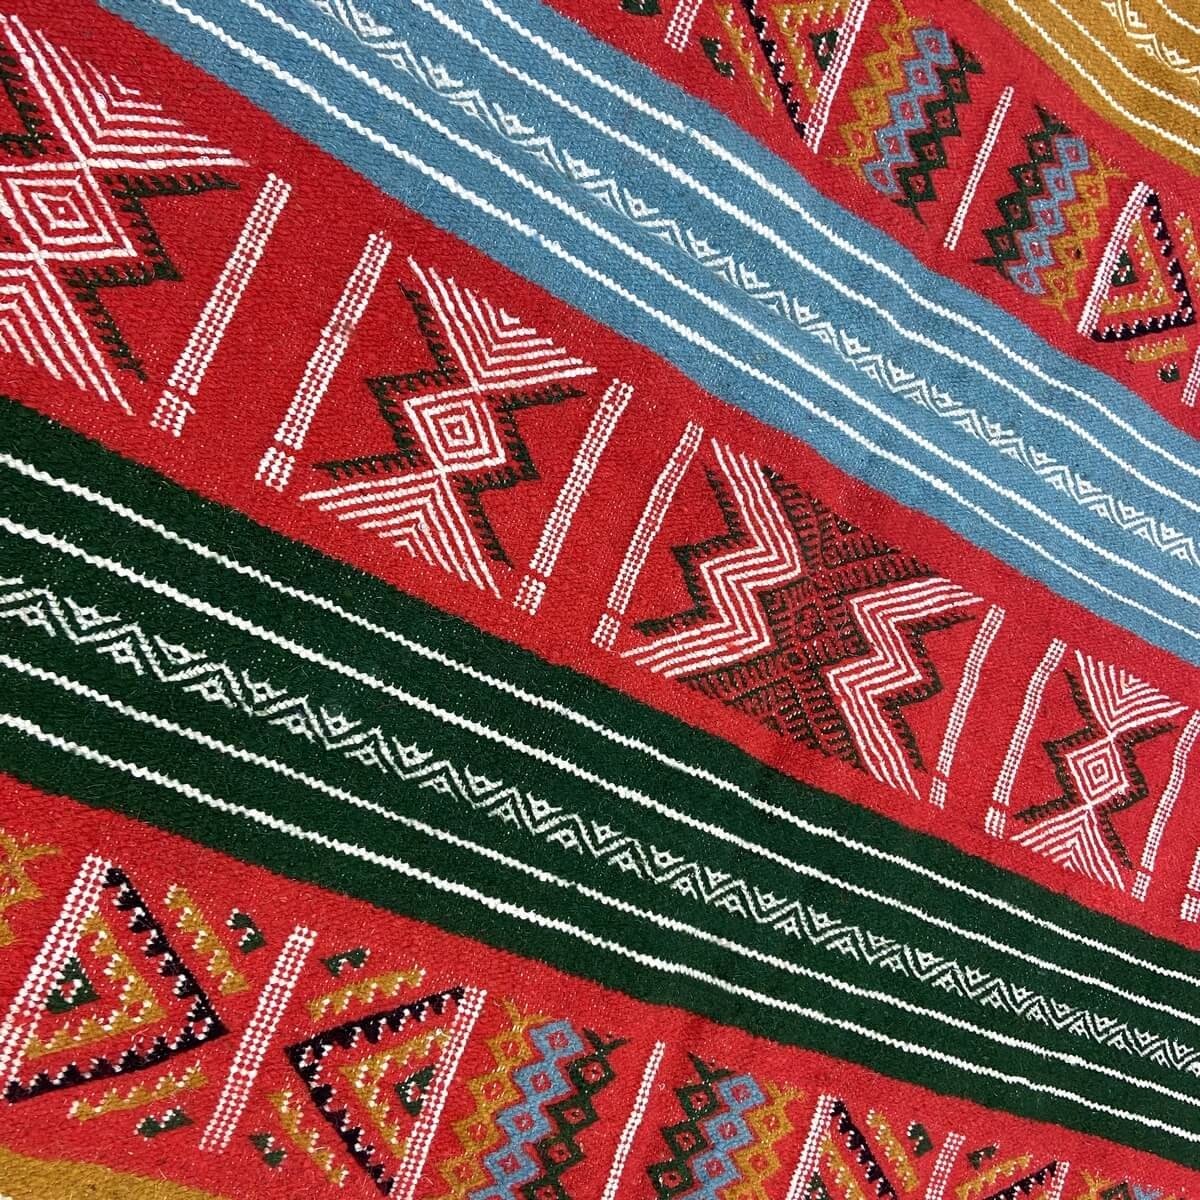 Tapis berbère Tapis Kilim Dalina 100x150 Multicolore (Tissé main, Laine) Tapis kilim tunisien style tapis marocain. Tapis rectan